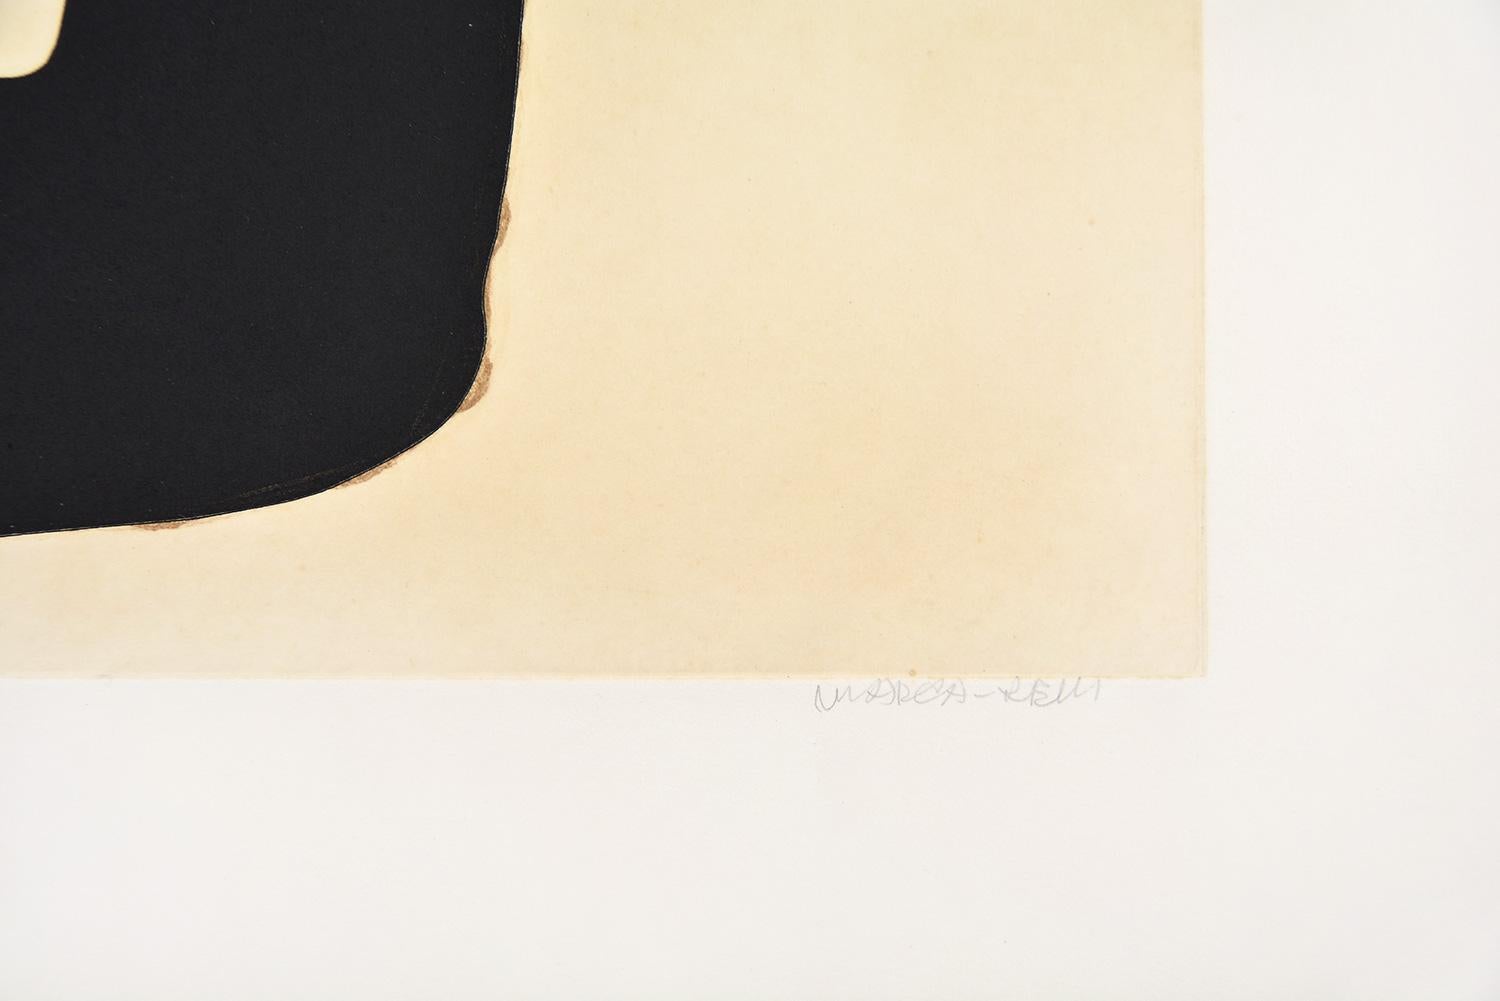 Conrad Marca Relli - Composition III
Date de création : 1977
Support : Gravure et aquatinte sur papier Gvarro
Numéro d'édition : 51/75
Taille : 56 x 76 cm
Condit : En très bon état et jamais encadré
Observations : Gravure et aquatinte sur papier